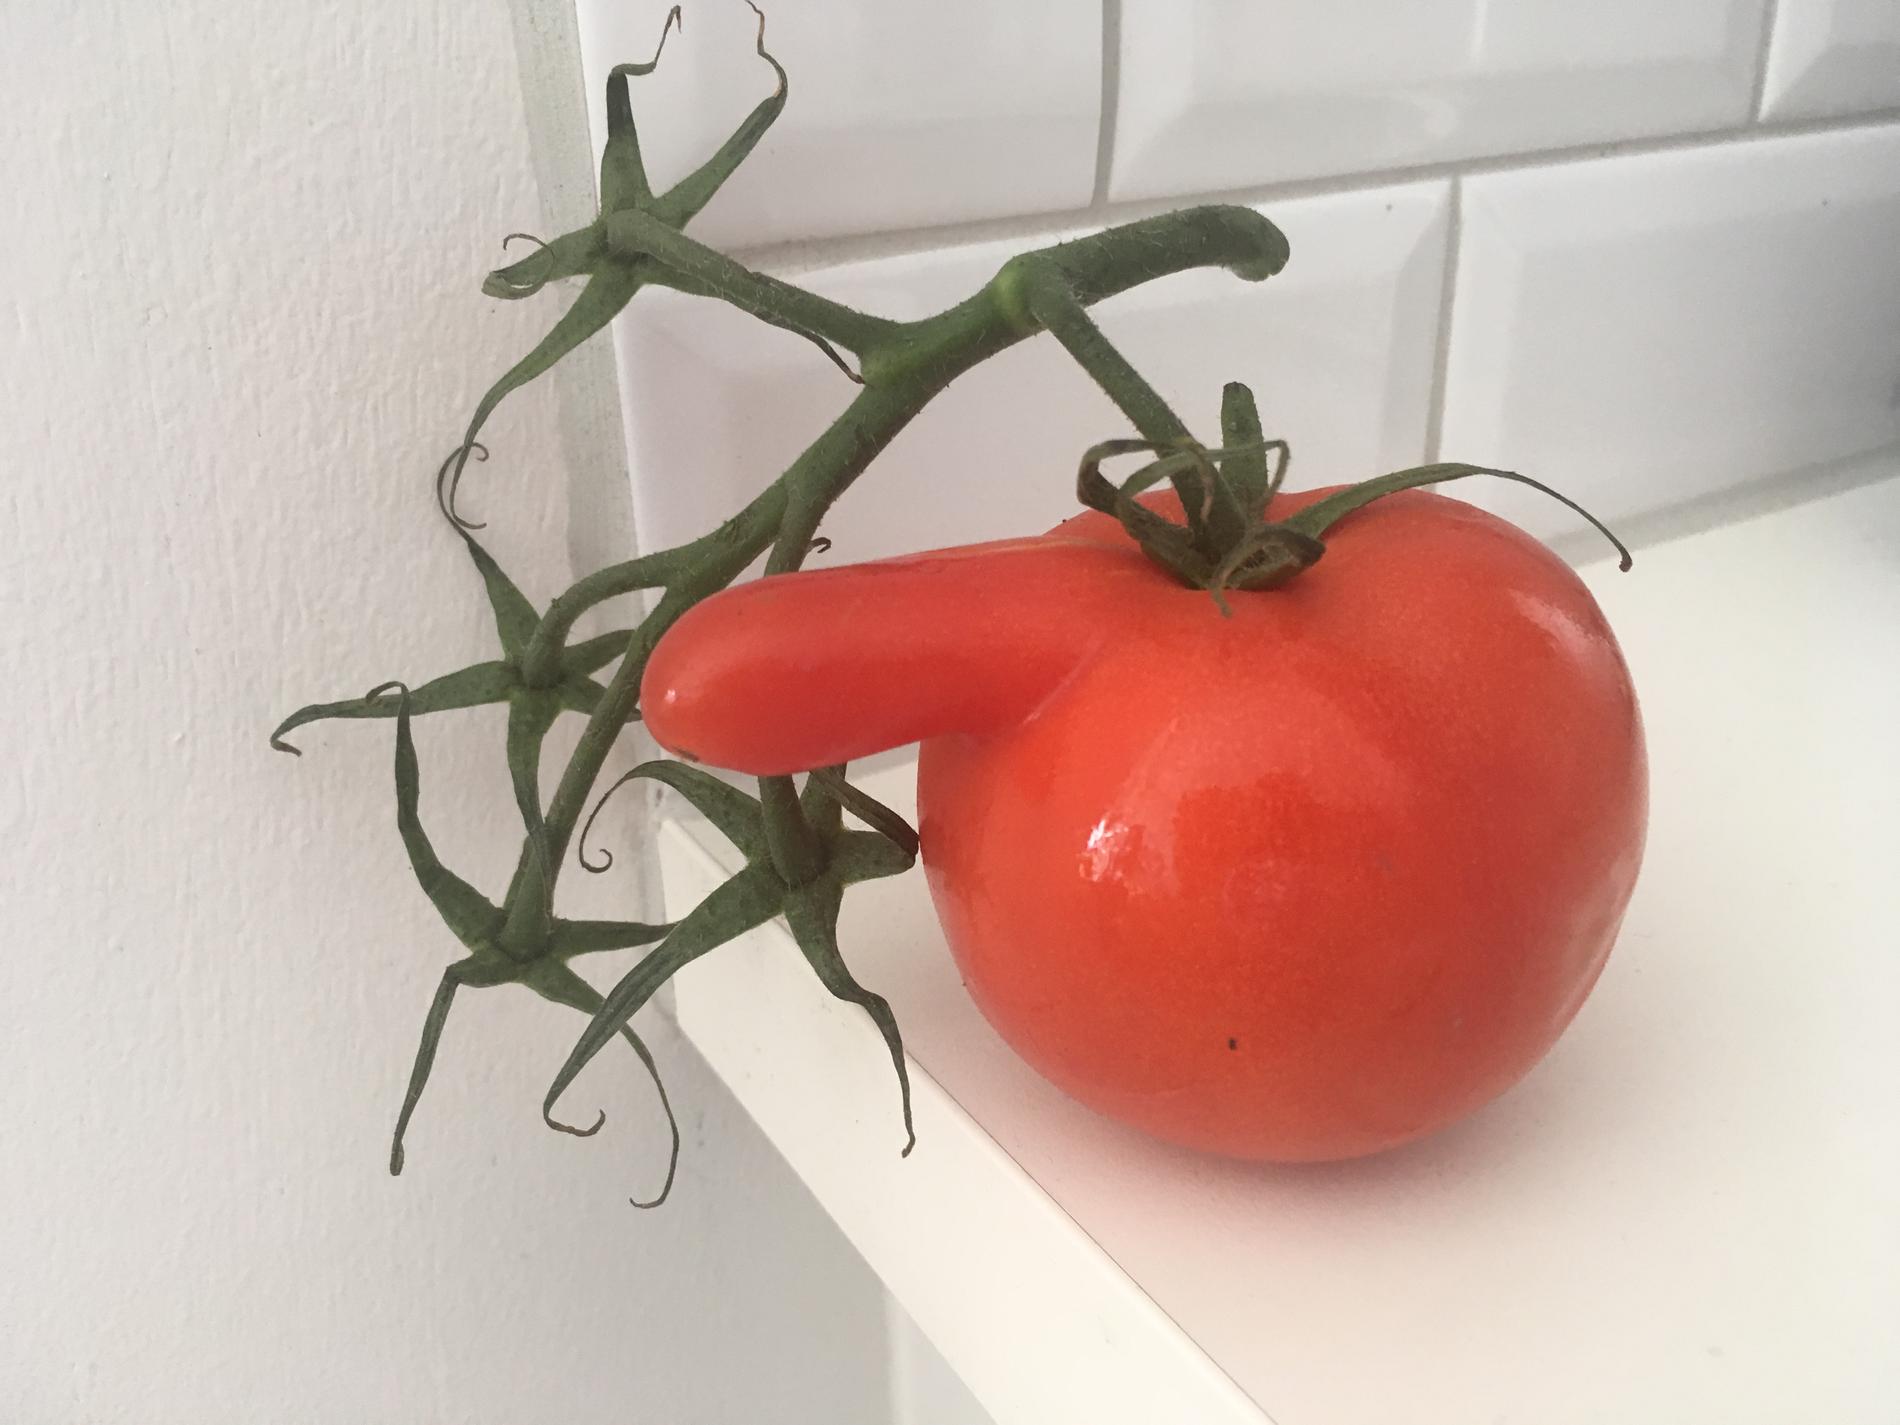 ”Hur ofta händer det att en tomat ser ut just så här?”